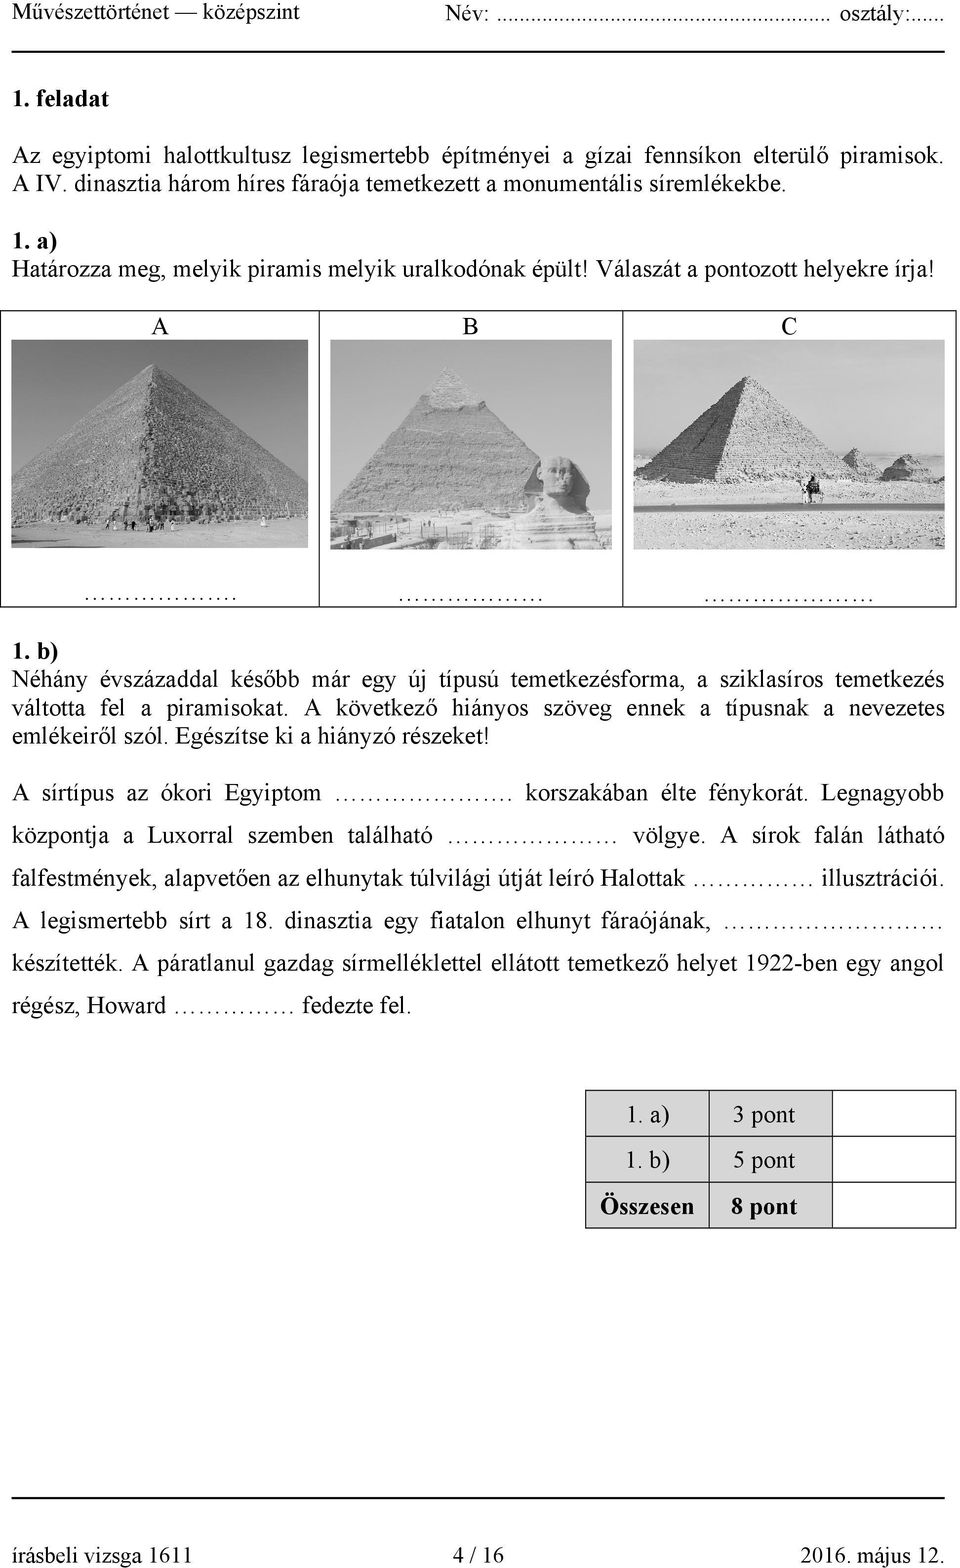 b) Néhány évszázaddal később már egy új típusú temetkezésforma, a sziklasíros temetkezés váltotta fel a piramisokat. A következő hiányos szöveg ennek a típusnak a nevezetes emlékeiről szól.